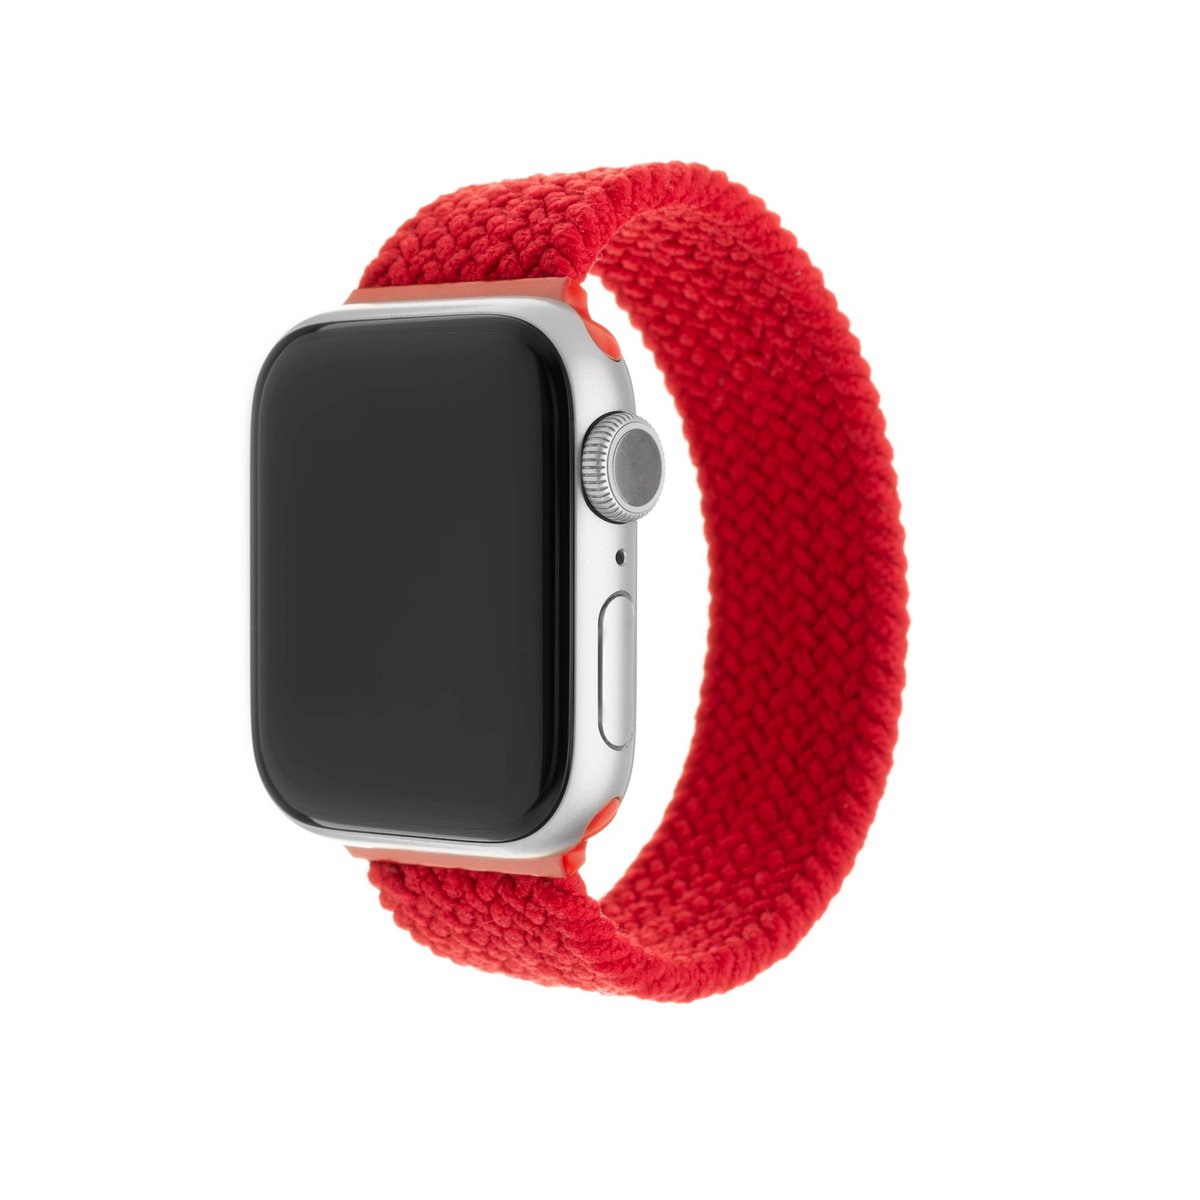 Zdjęcia - Pasek do smartwatcha / smartbanda FIXED Elastyczny pasek nylonowy  do Apple Watch 42/44/45mm, rozmiar S, czer 